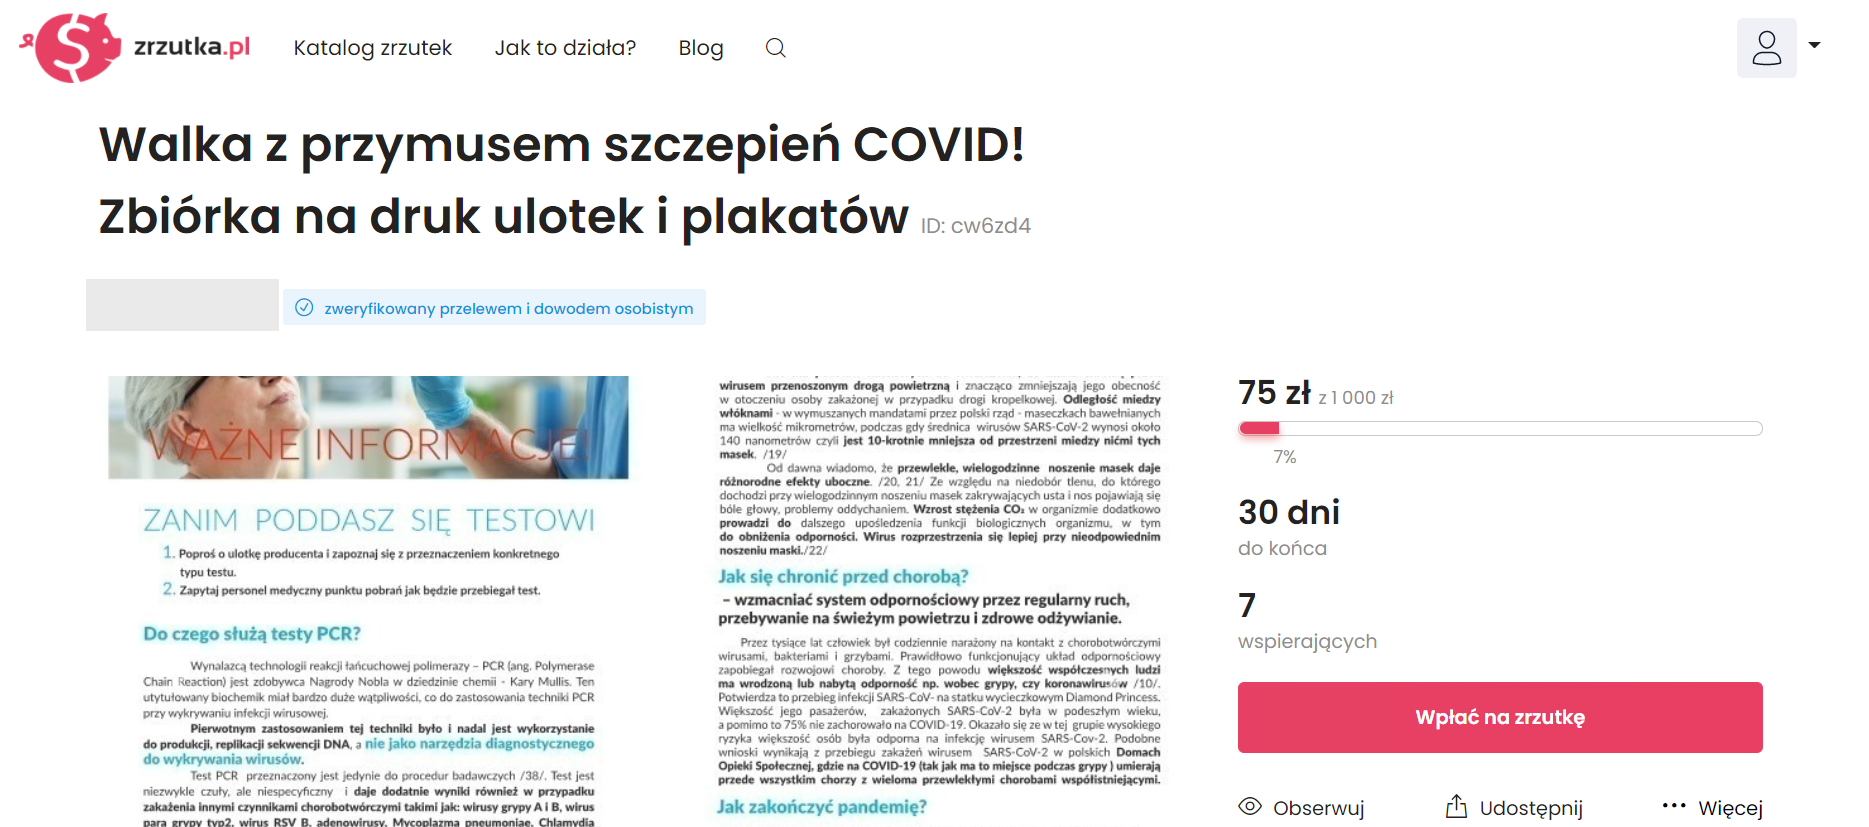 Internetowa zbiórka na ulotki z fałszywymi informacjami o epidemii COVID-19